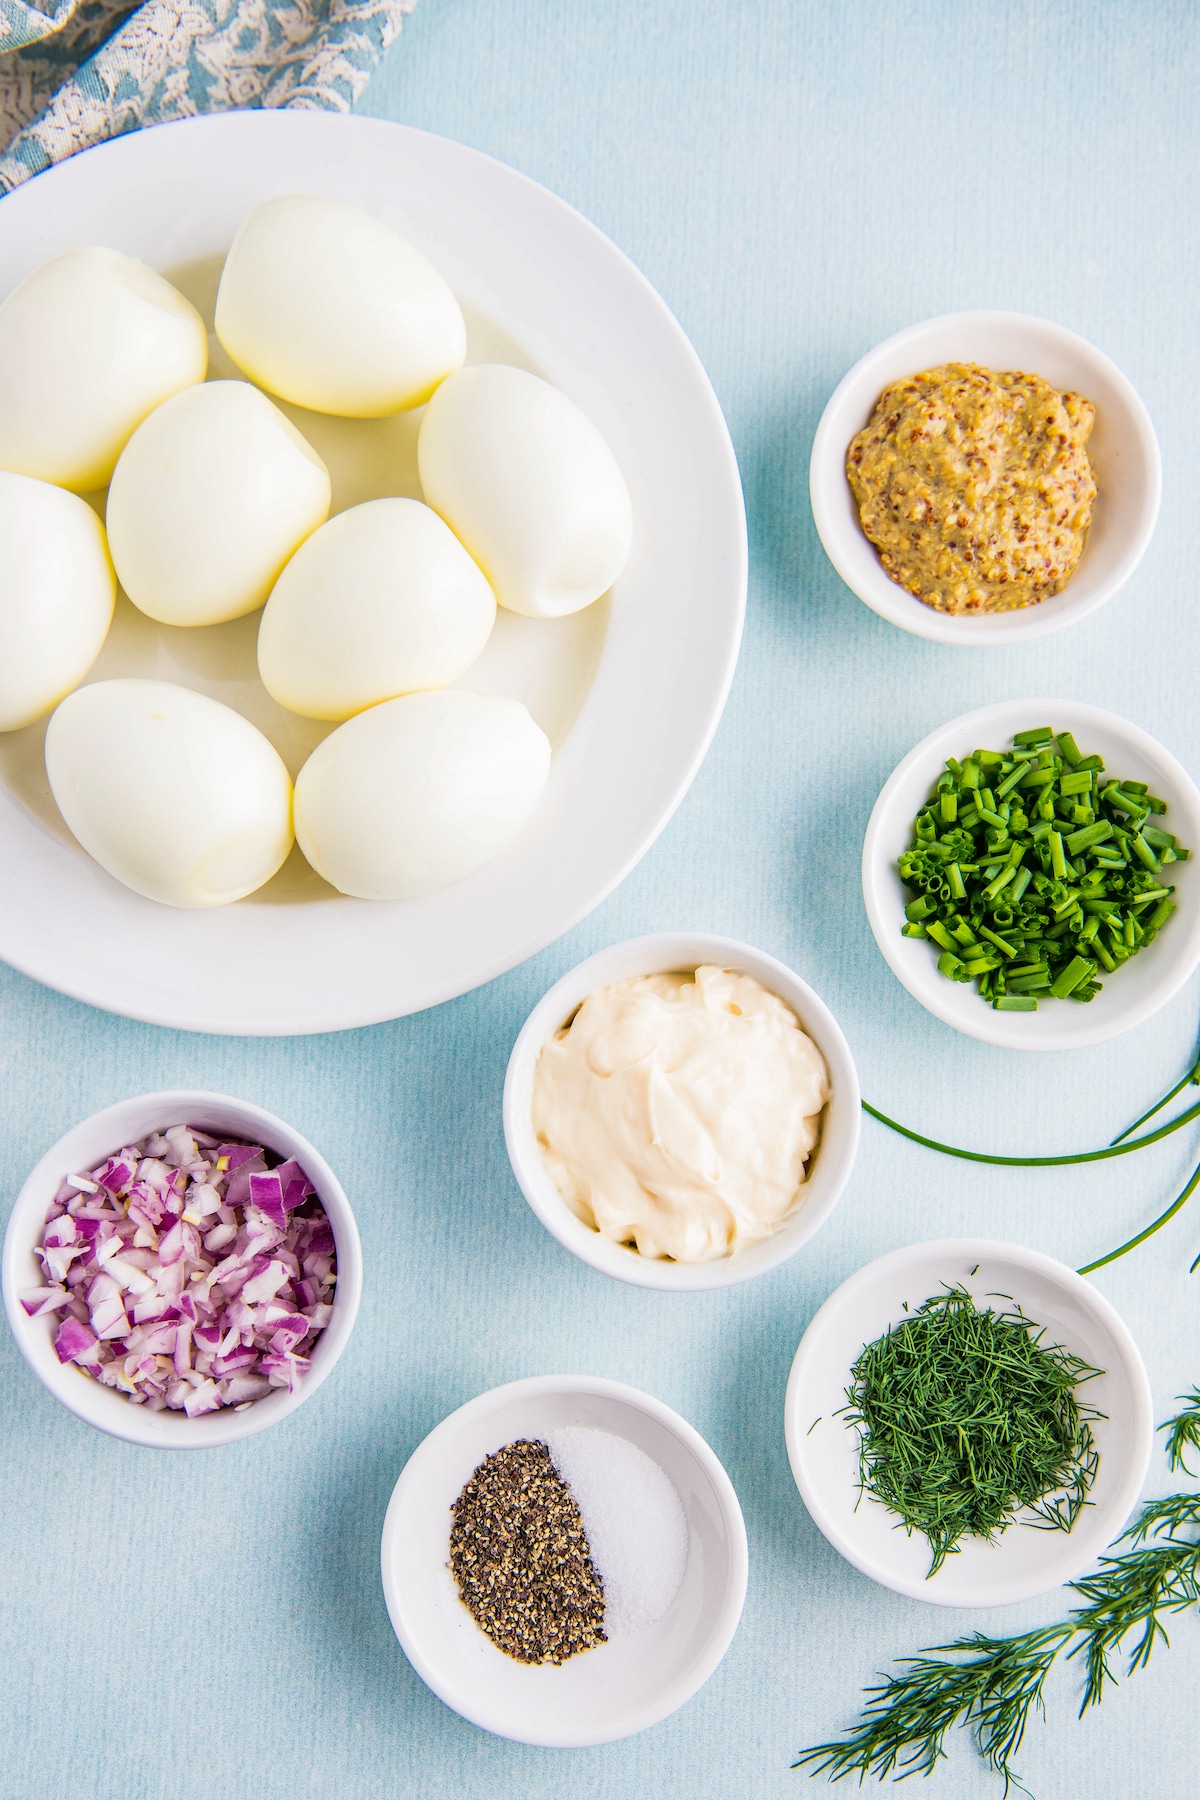 Ingredients for egg salad arranged in bowls.